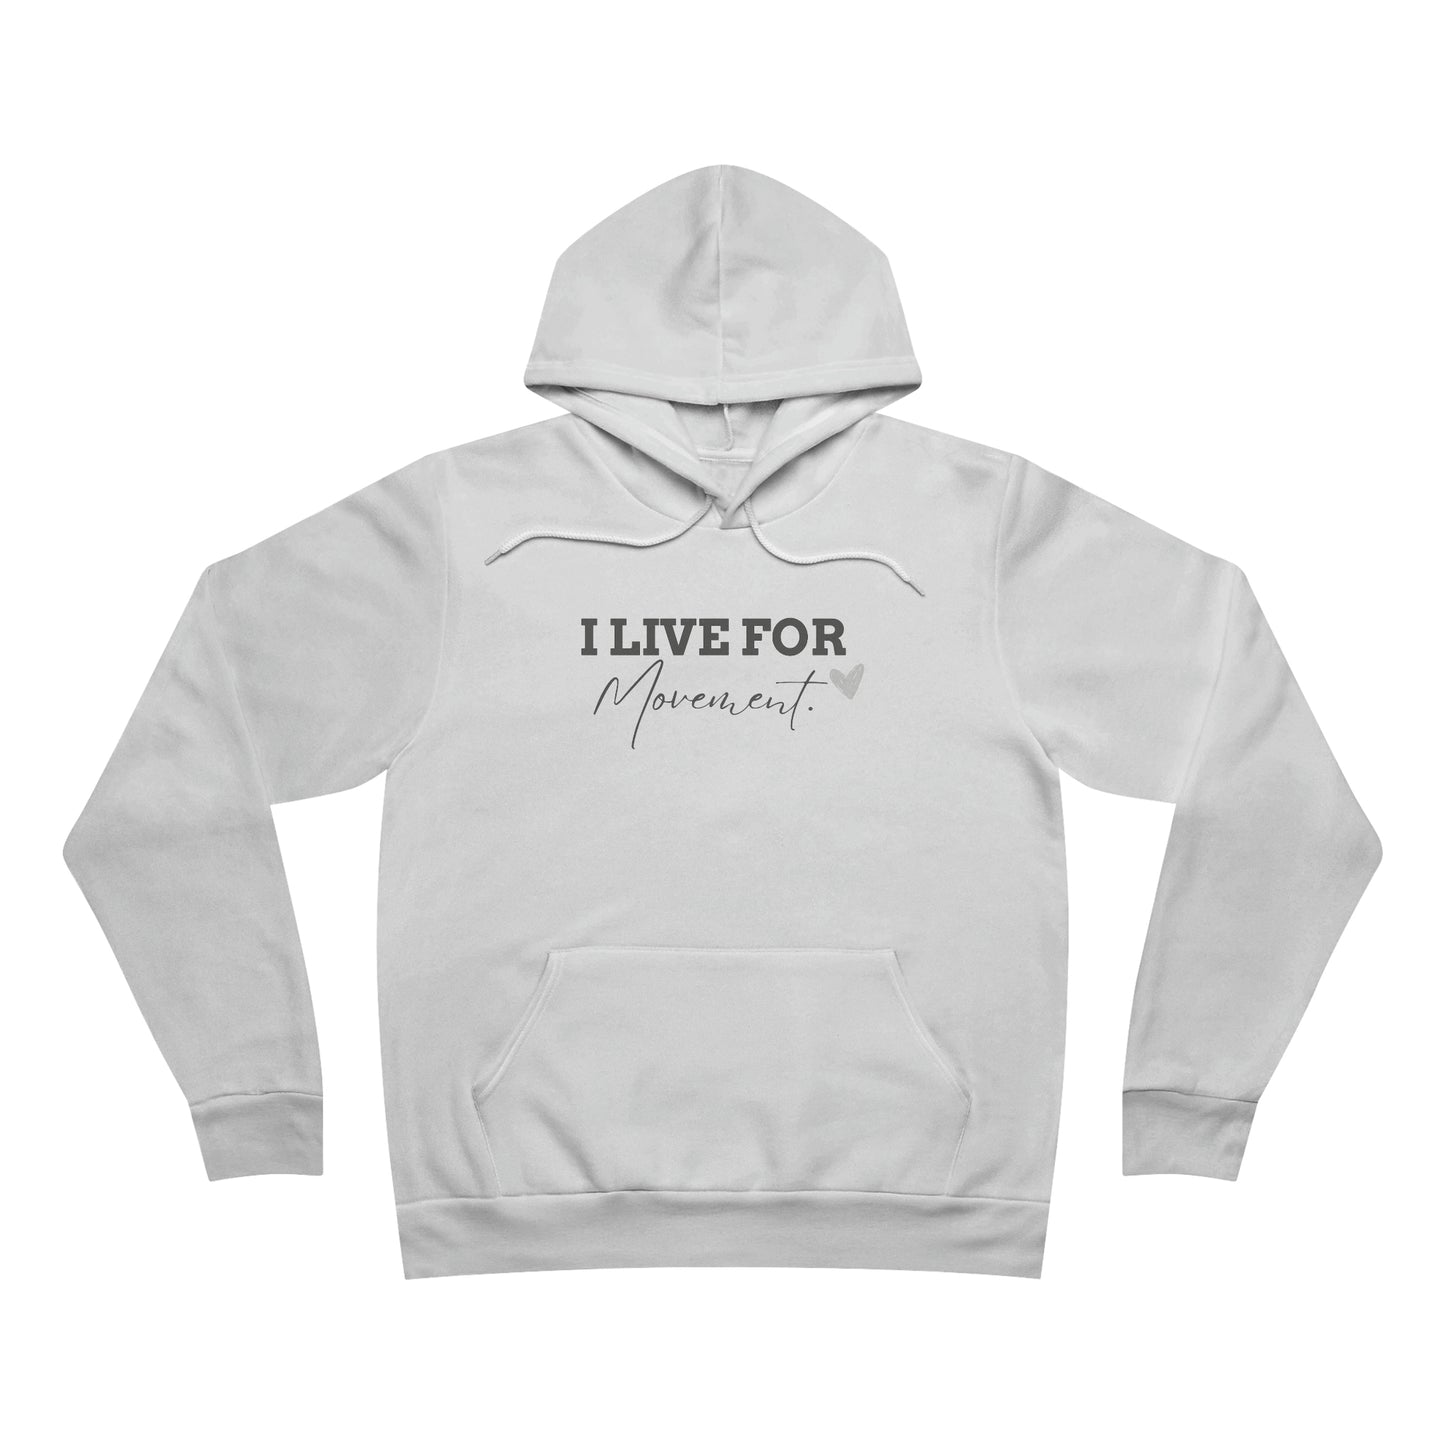 Dance fleece pullover hoodie| gift for dancer for cheer friend| comfy cozy sweatshirt for dancers